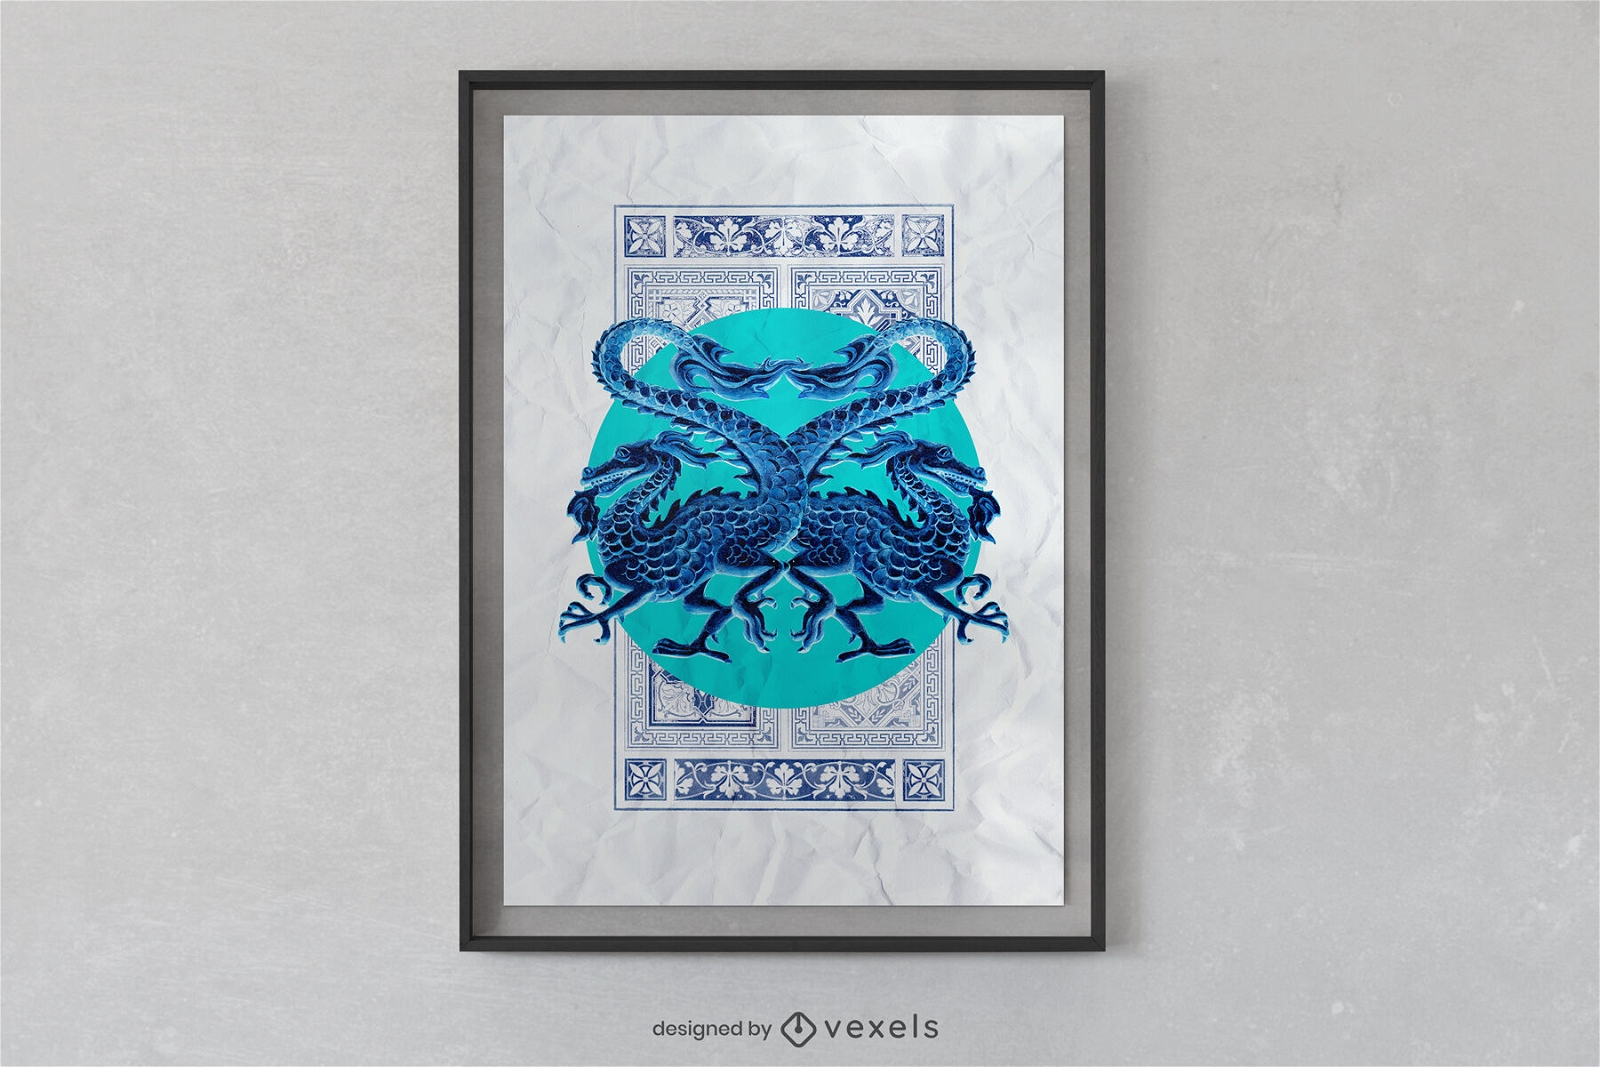 Plakatdesign mit blauen chinesischen Drachengesch?pfen